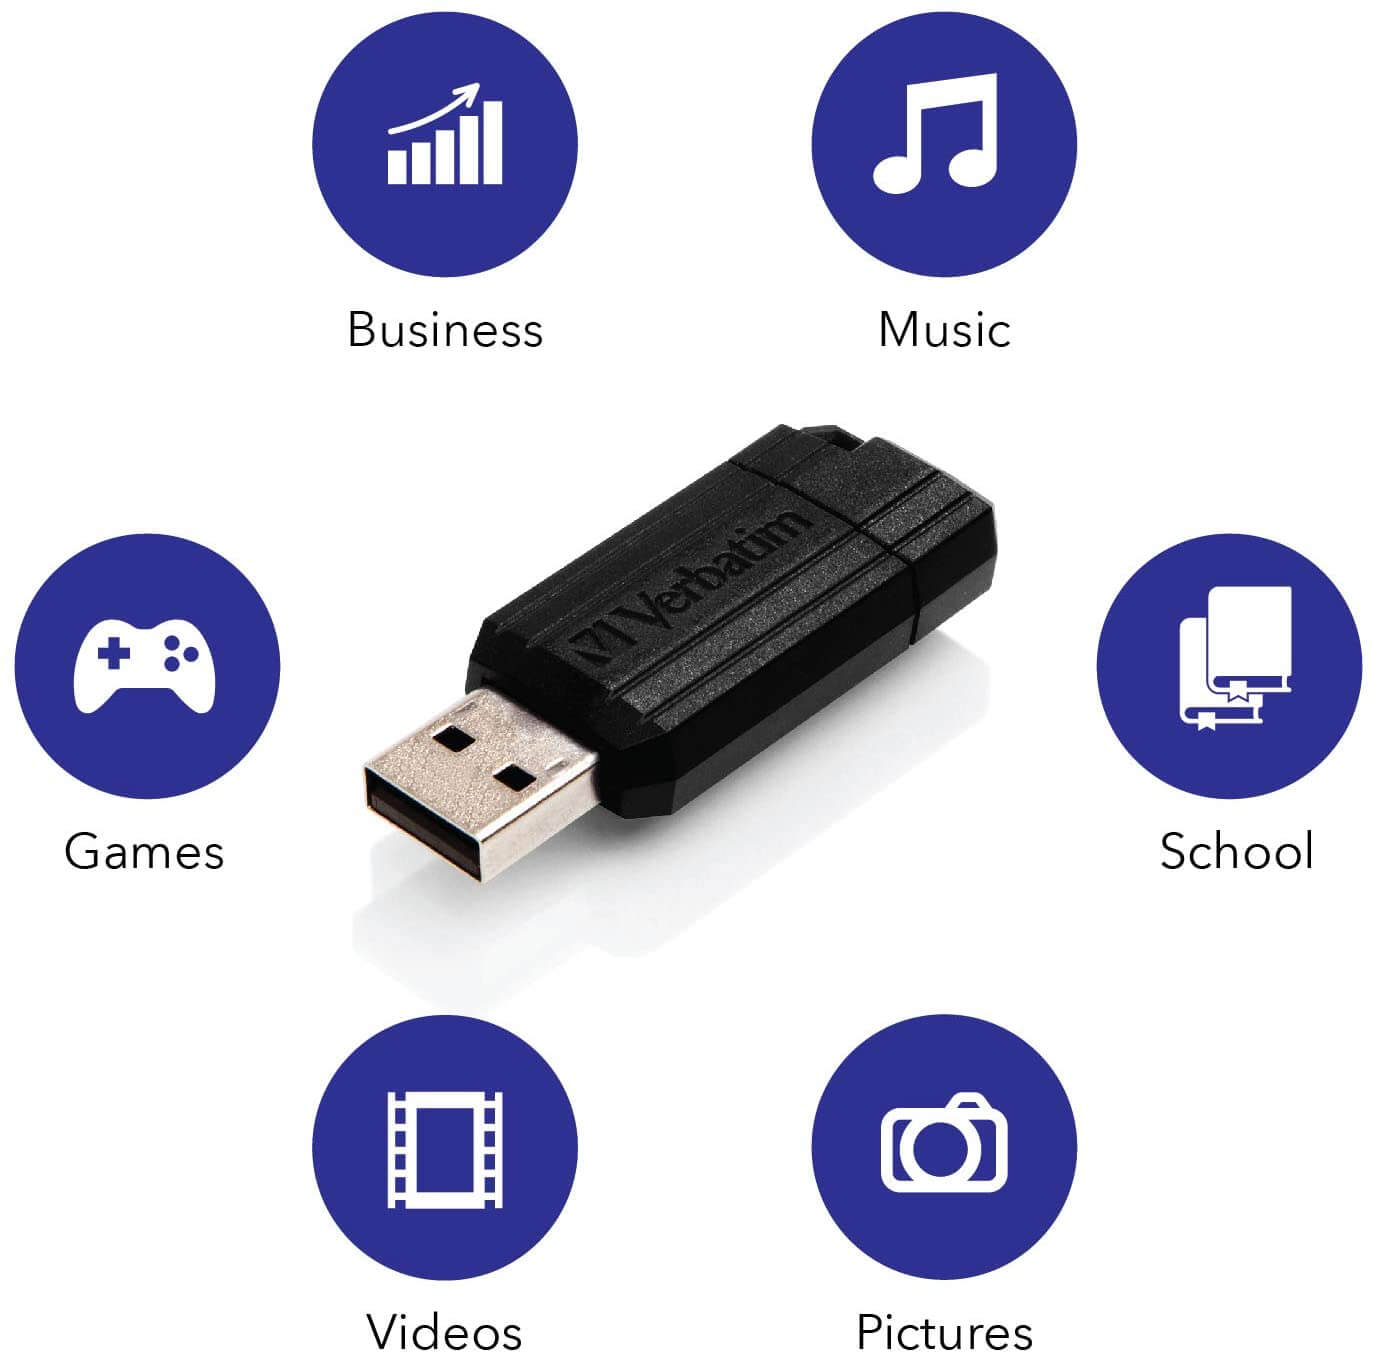 VERBATIM 64GB PINSTRIPE USB DRIVE BLACK